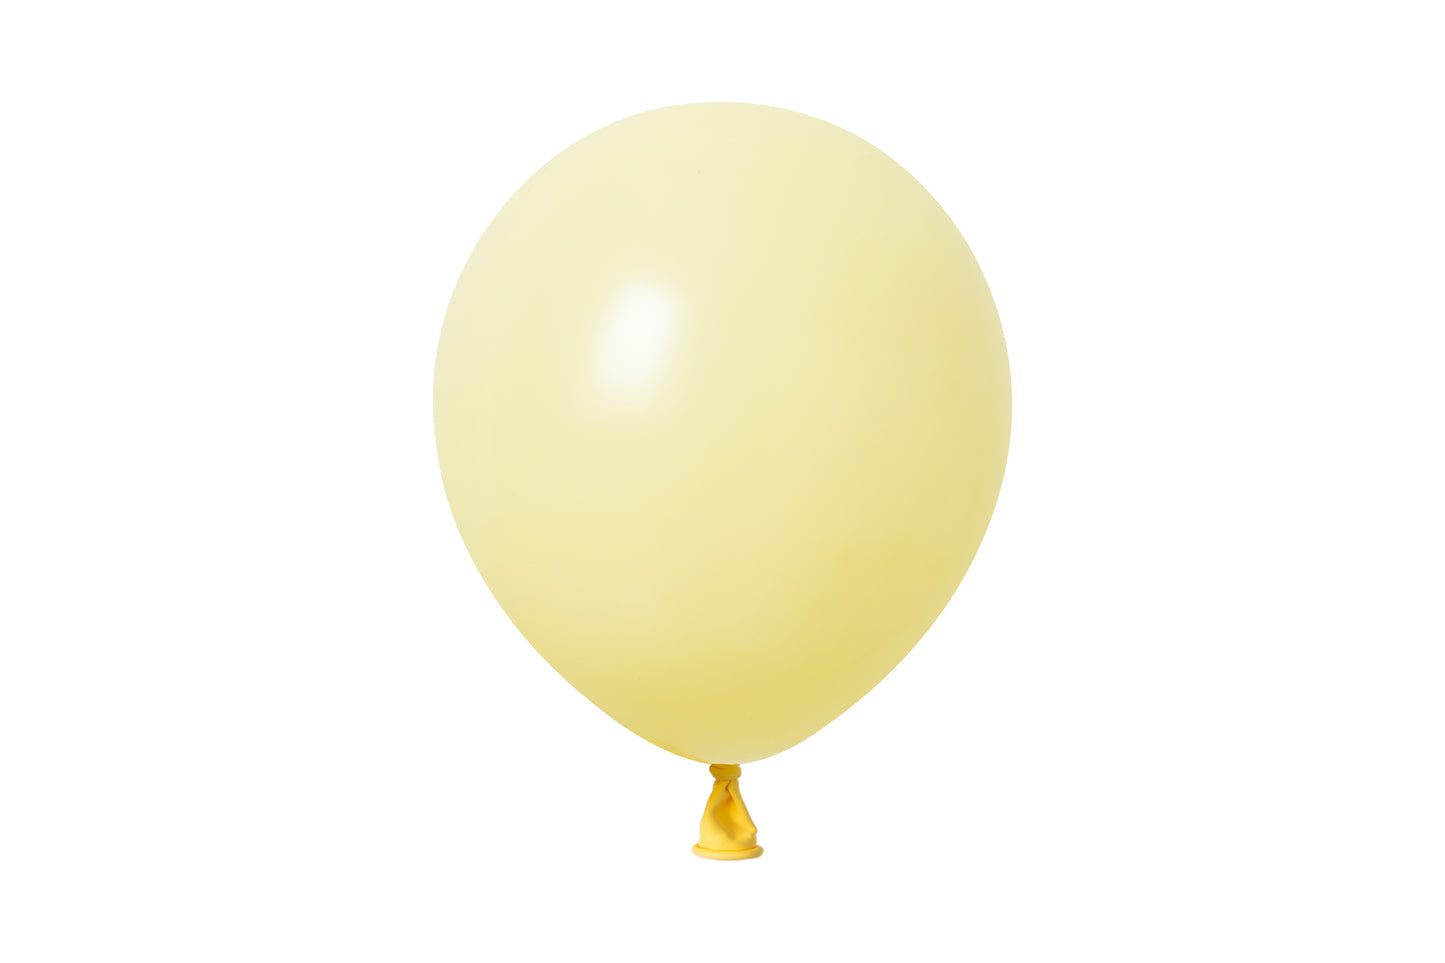 Winntex Premium 5" Latex Balloon - Light Yellow - 100ct